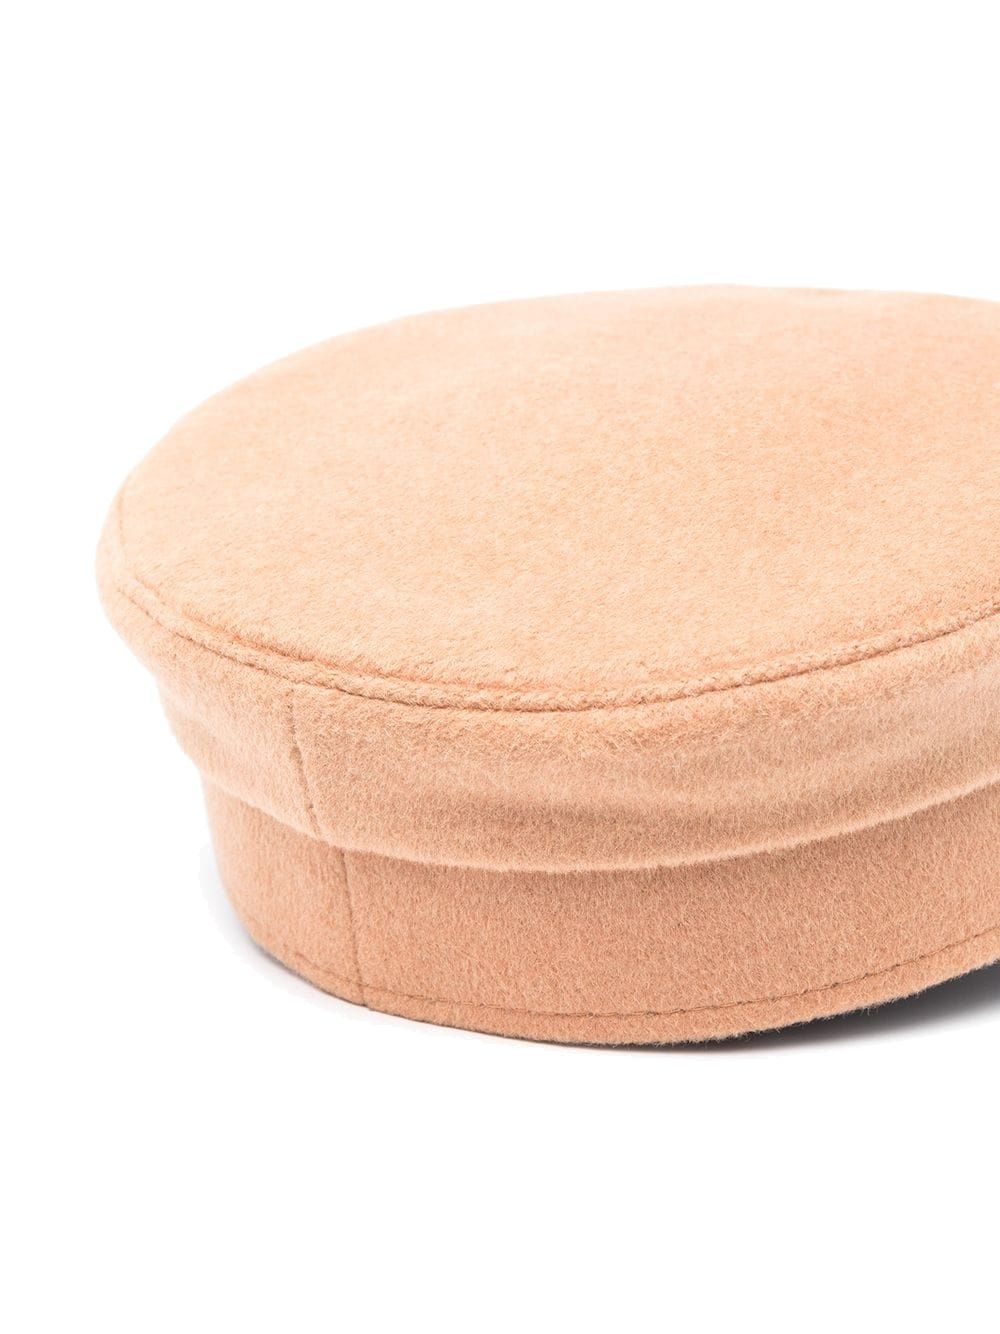 Wool Baker Boy hat